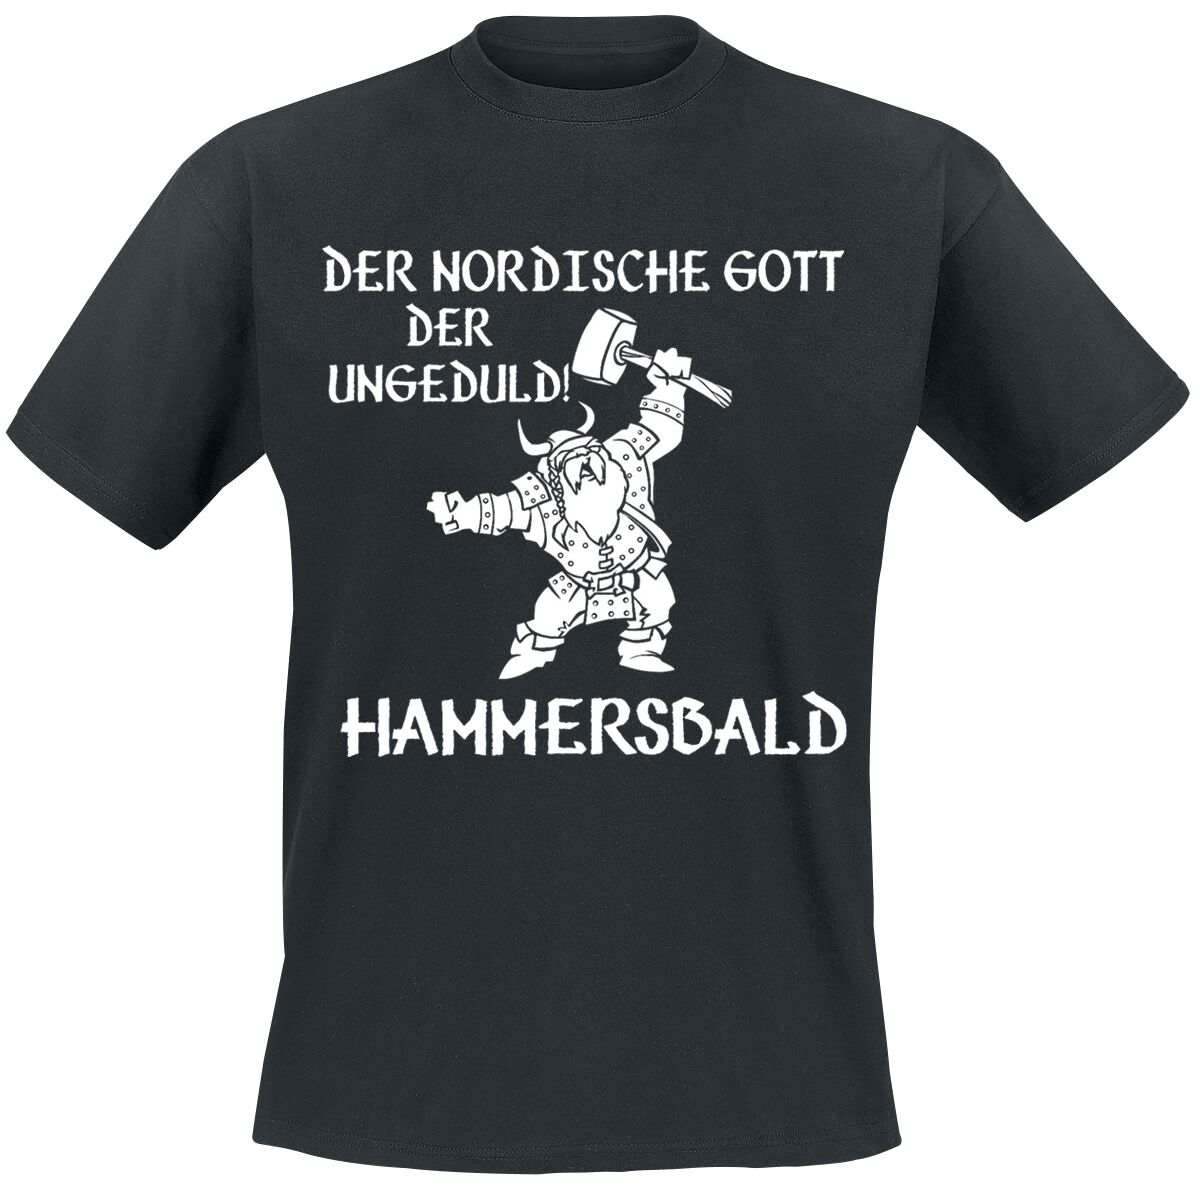 Der nordische Gott der Ungeduld! Hammersbald  T-Shirt schwarz in M